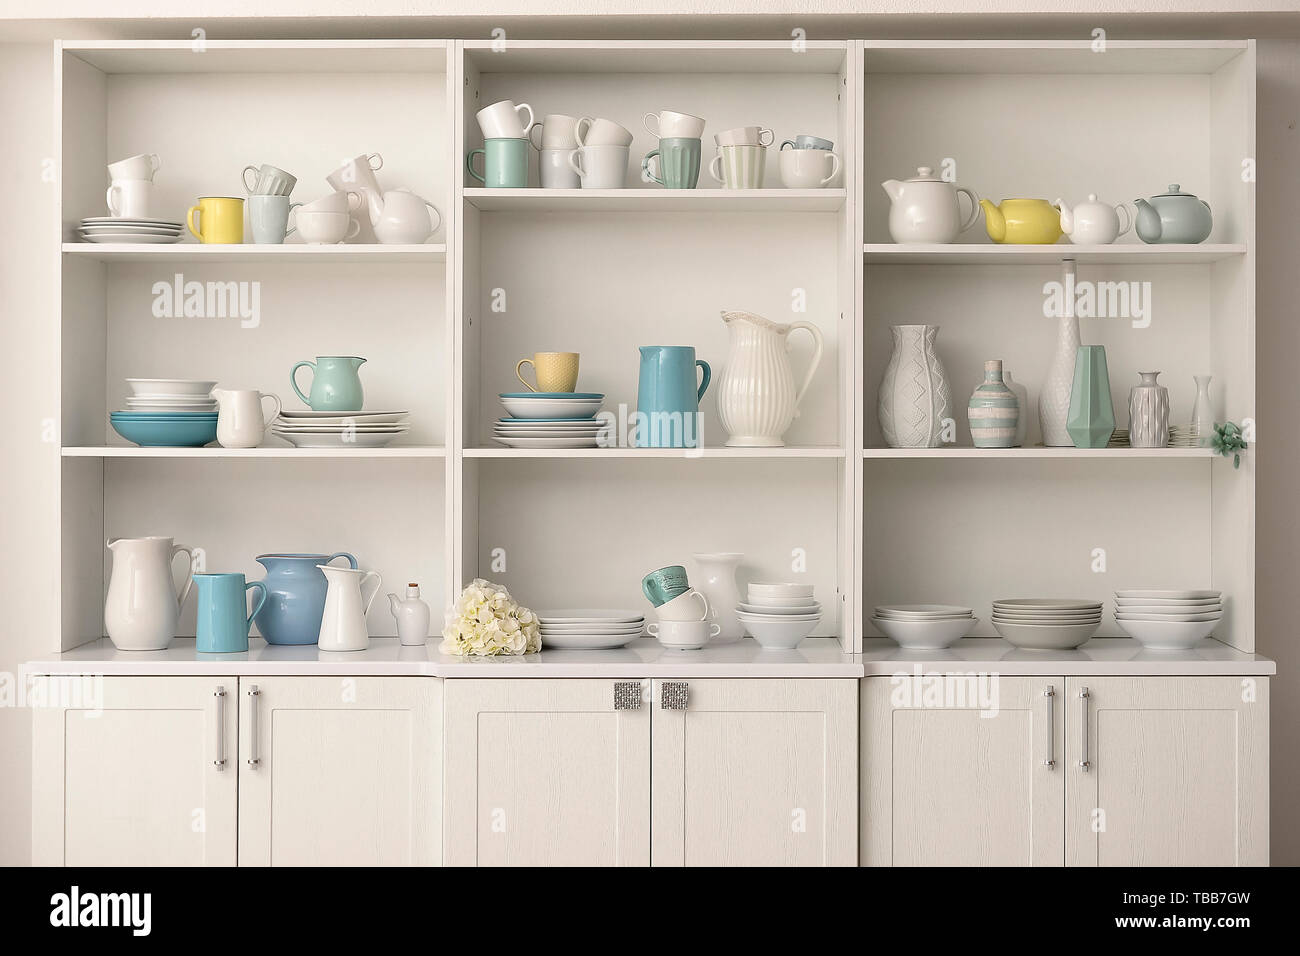 Schrank mit sauberes Geschirr in der Küche Stockfotografie - Alamy